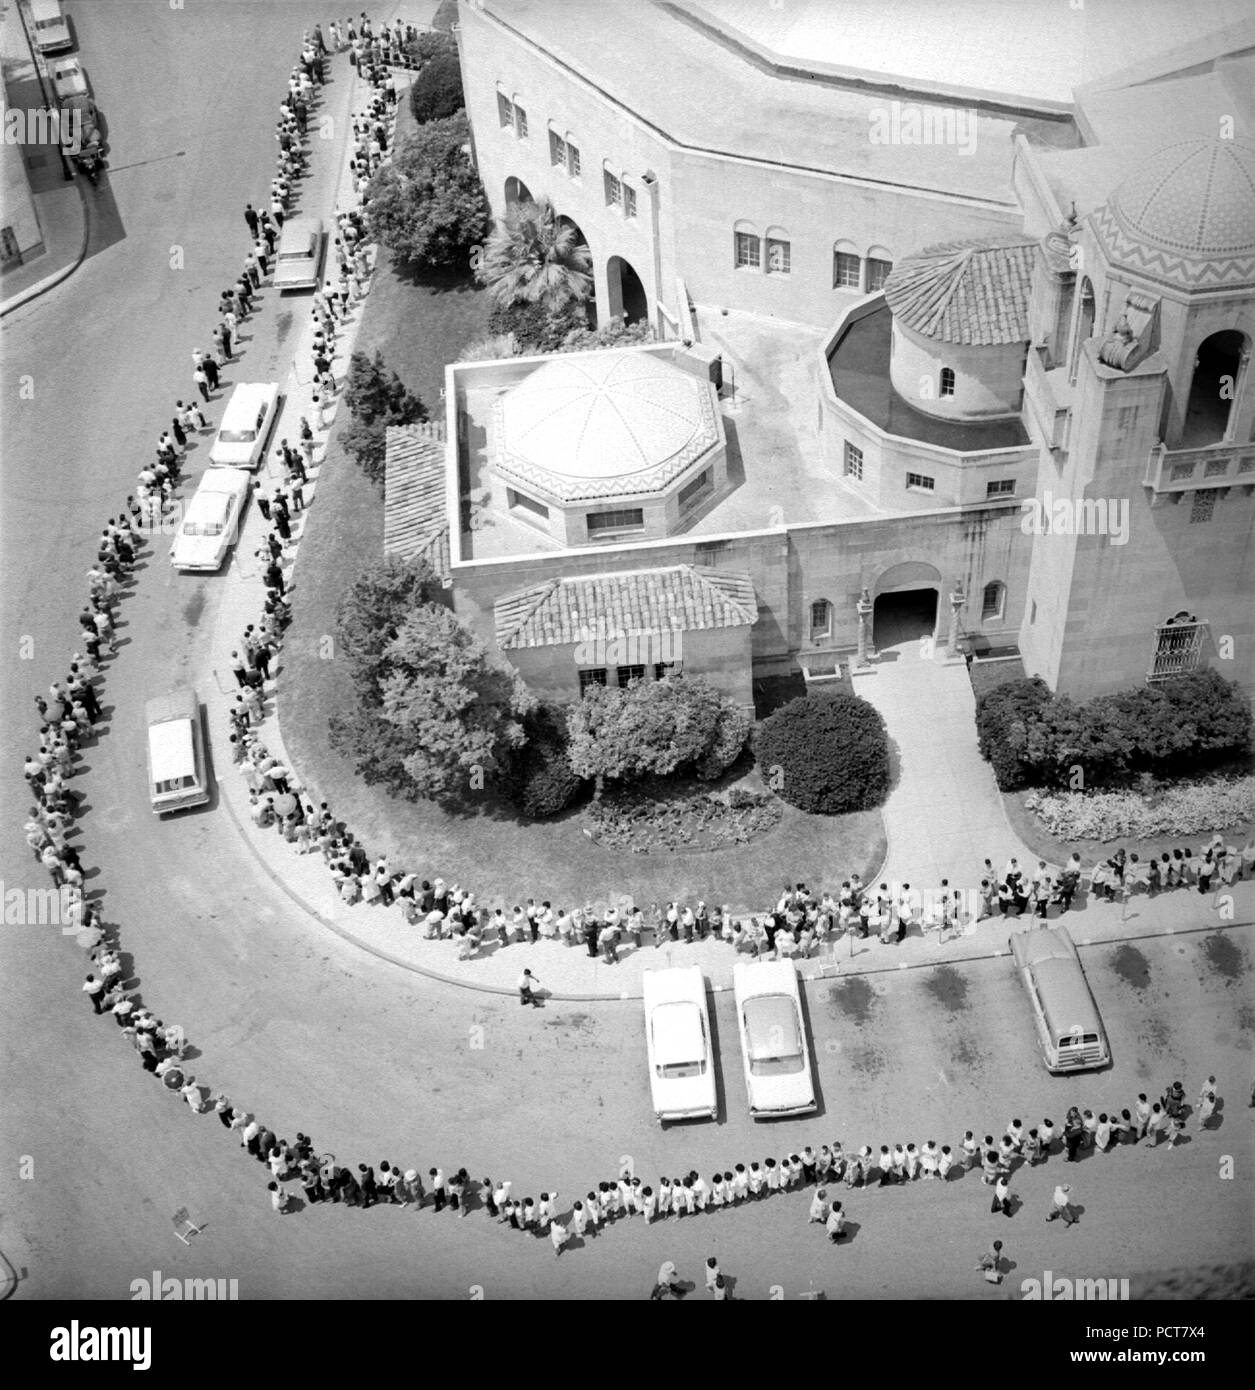 Cette image historique 1962, l'illustre une vue aérienne d'une longue lignée de gens, qui étaient en attente de leur vaccination contre la polio. La ligne a été si longtemps, qu'il entourait un city Auditorium à San Antonio, Texas. Banque D'Images